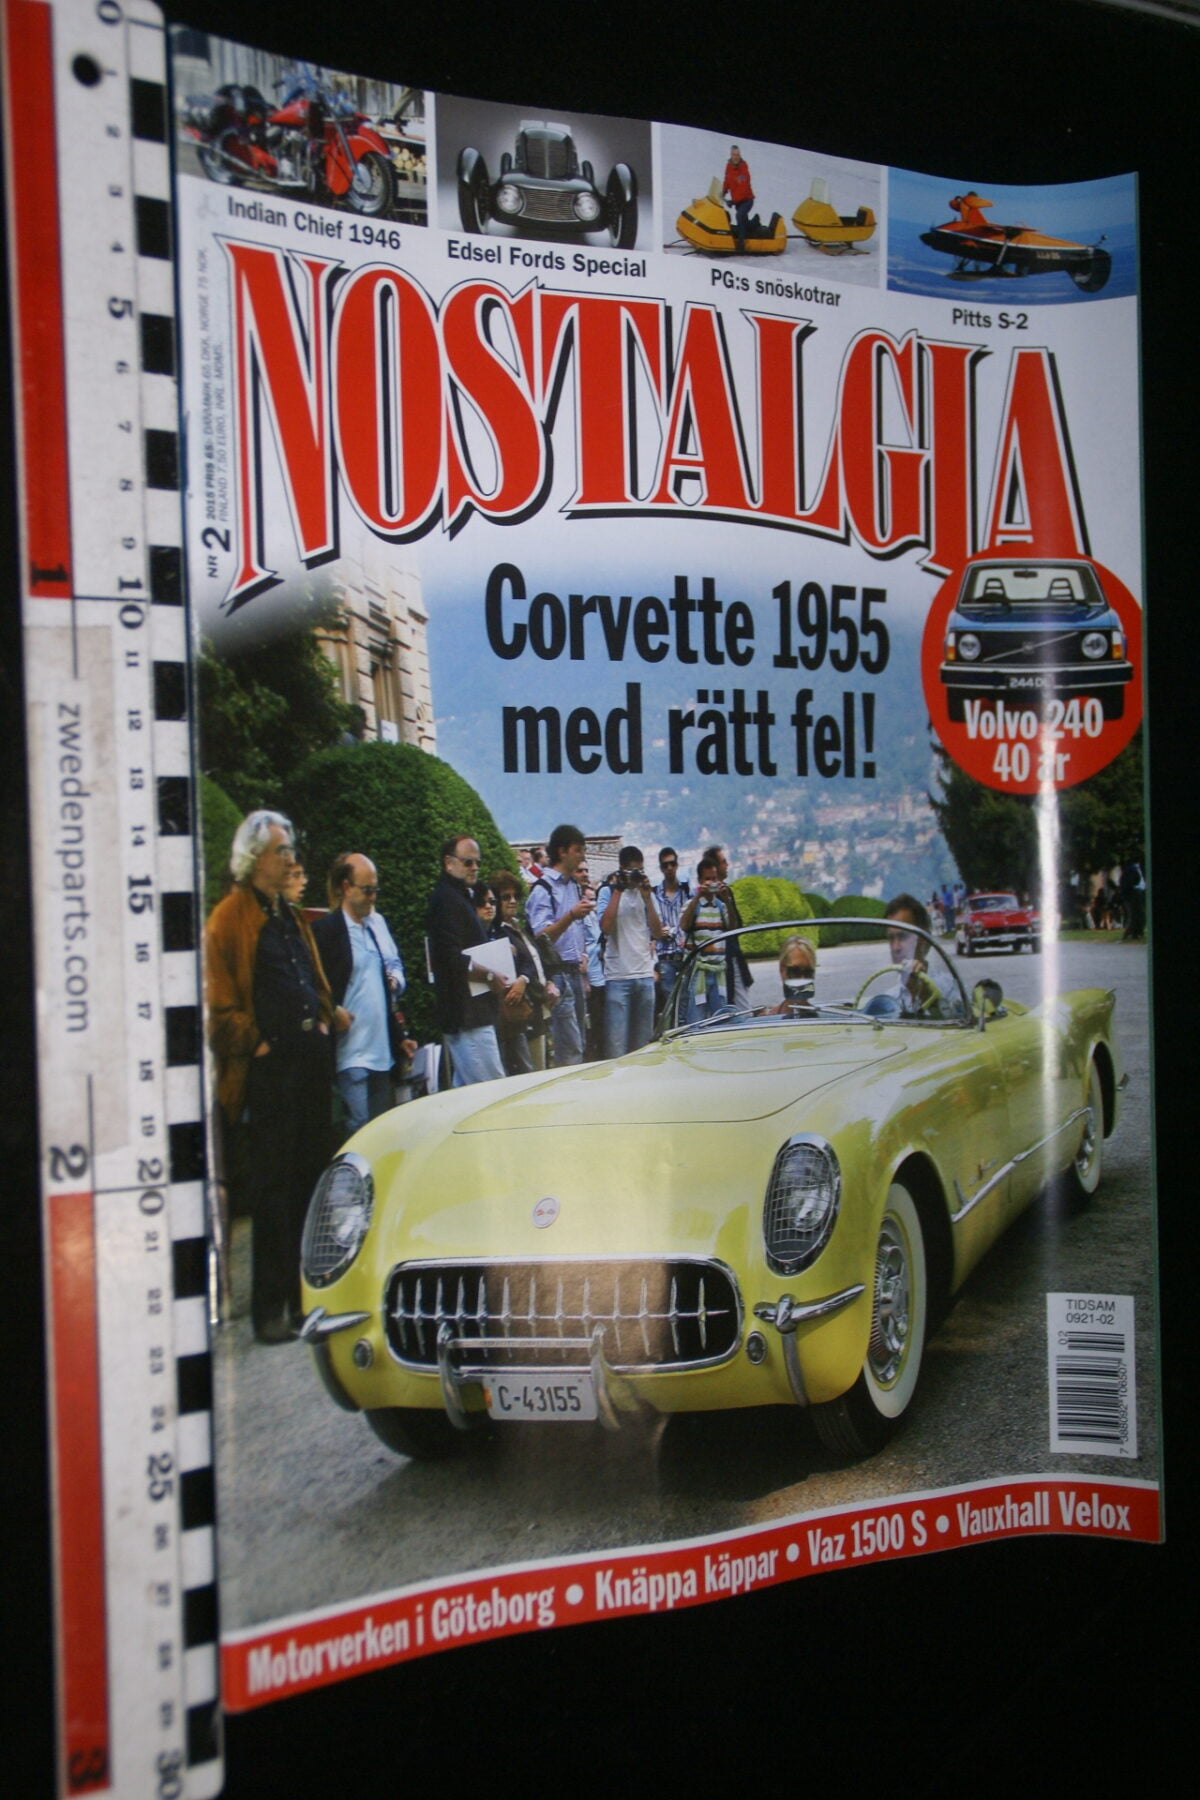 DSC09816 2015 februari tijdschrift Nostalgia Volvo 240 40 jaar Chevrolet Corvette 1955 Edsel Ford-8be94383